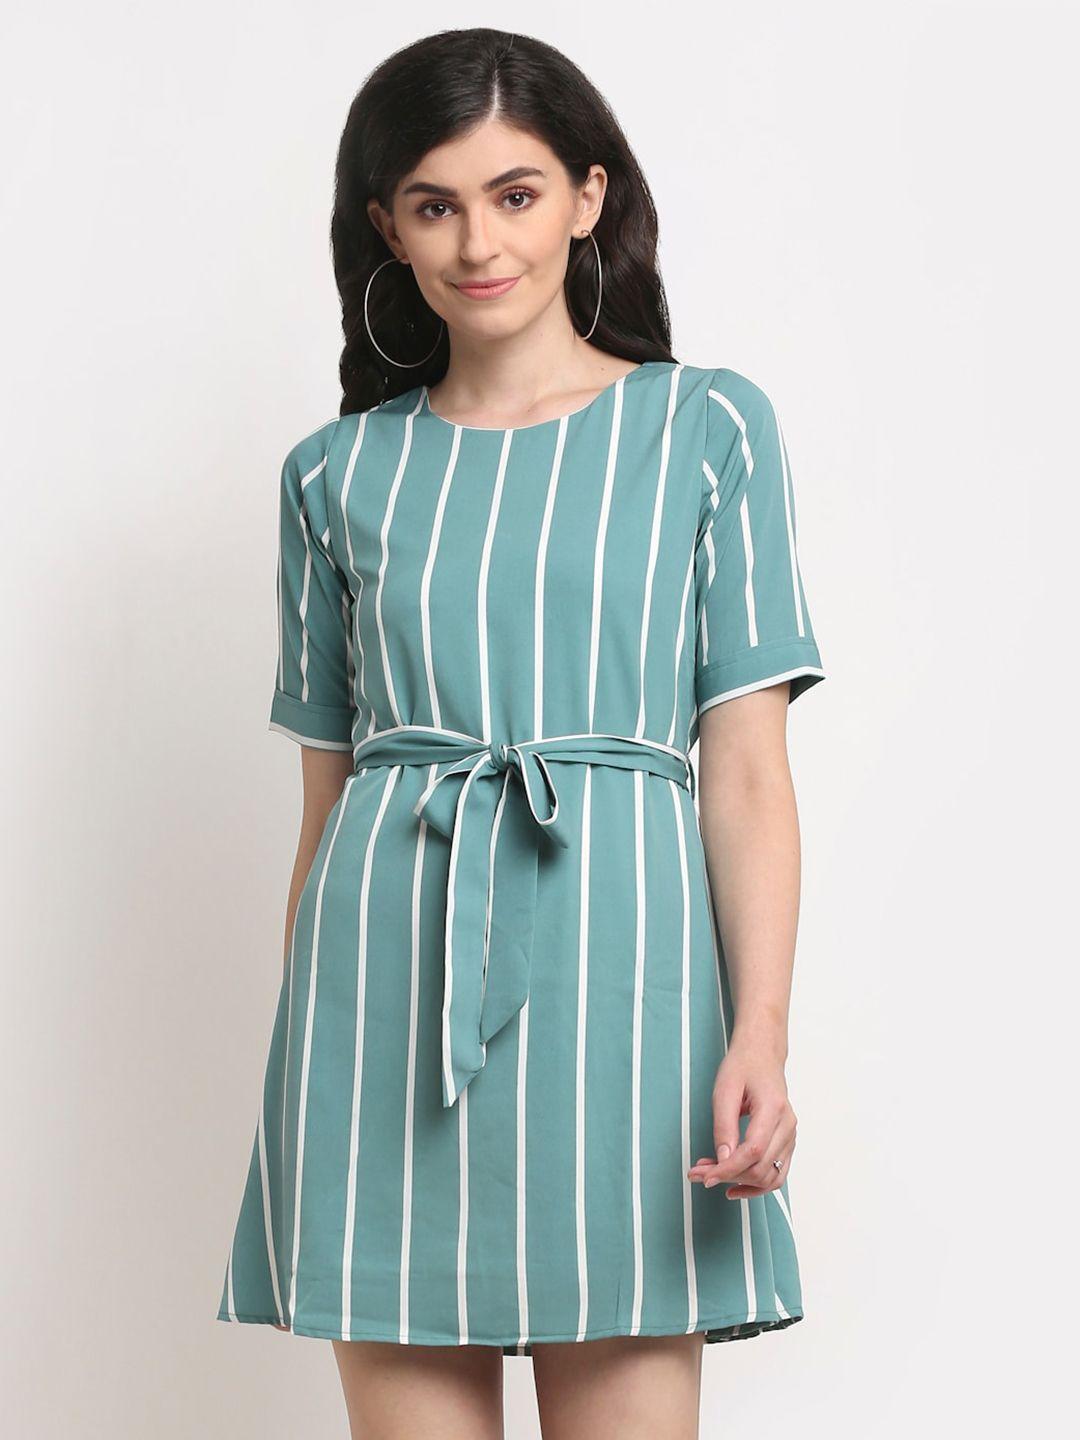 la zoire teal blue & white striped crepe a-line dress